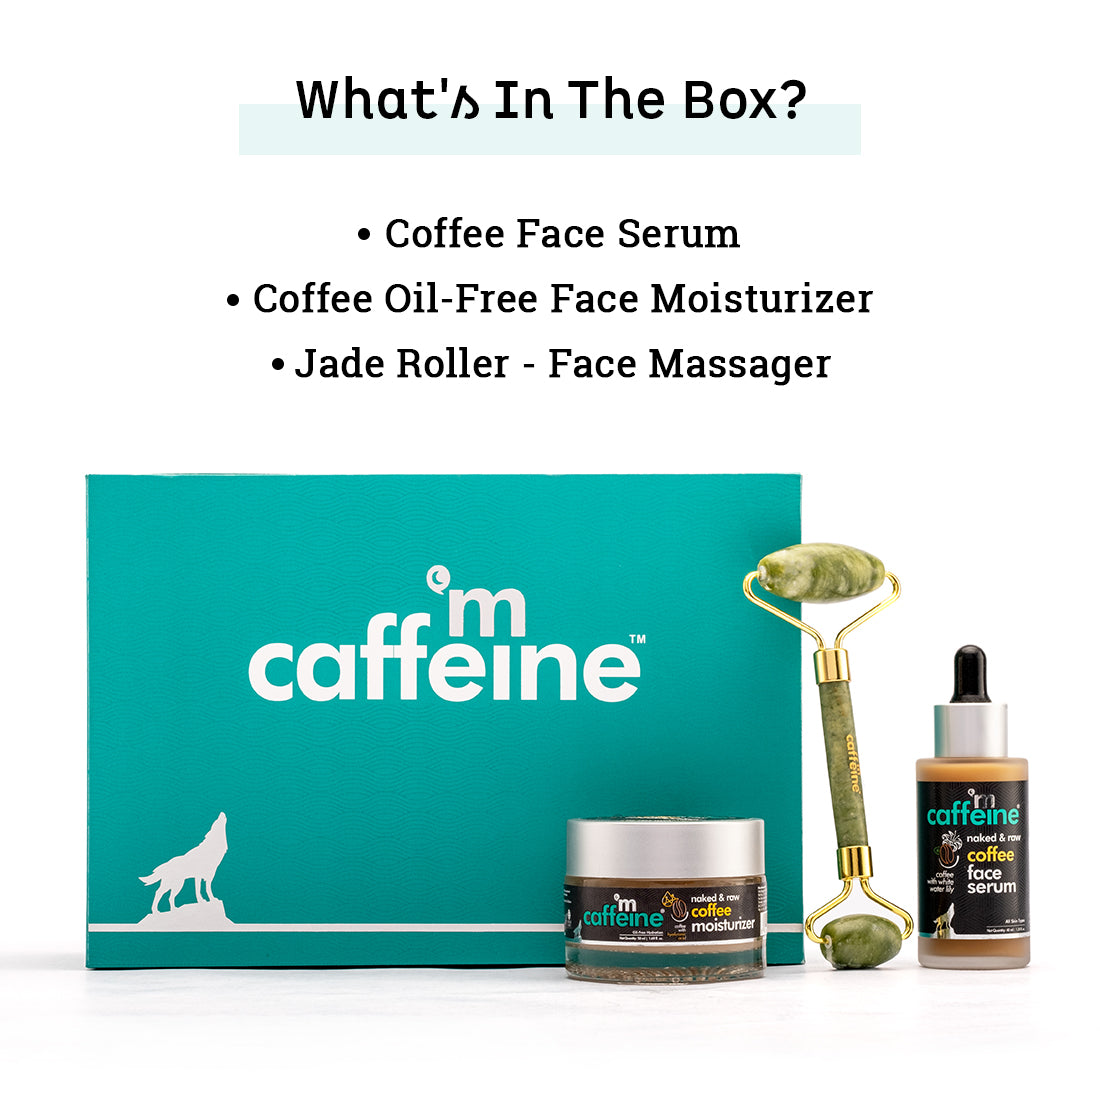 mCaffeine Coffee Face De-stress - Gift Kit